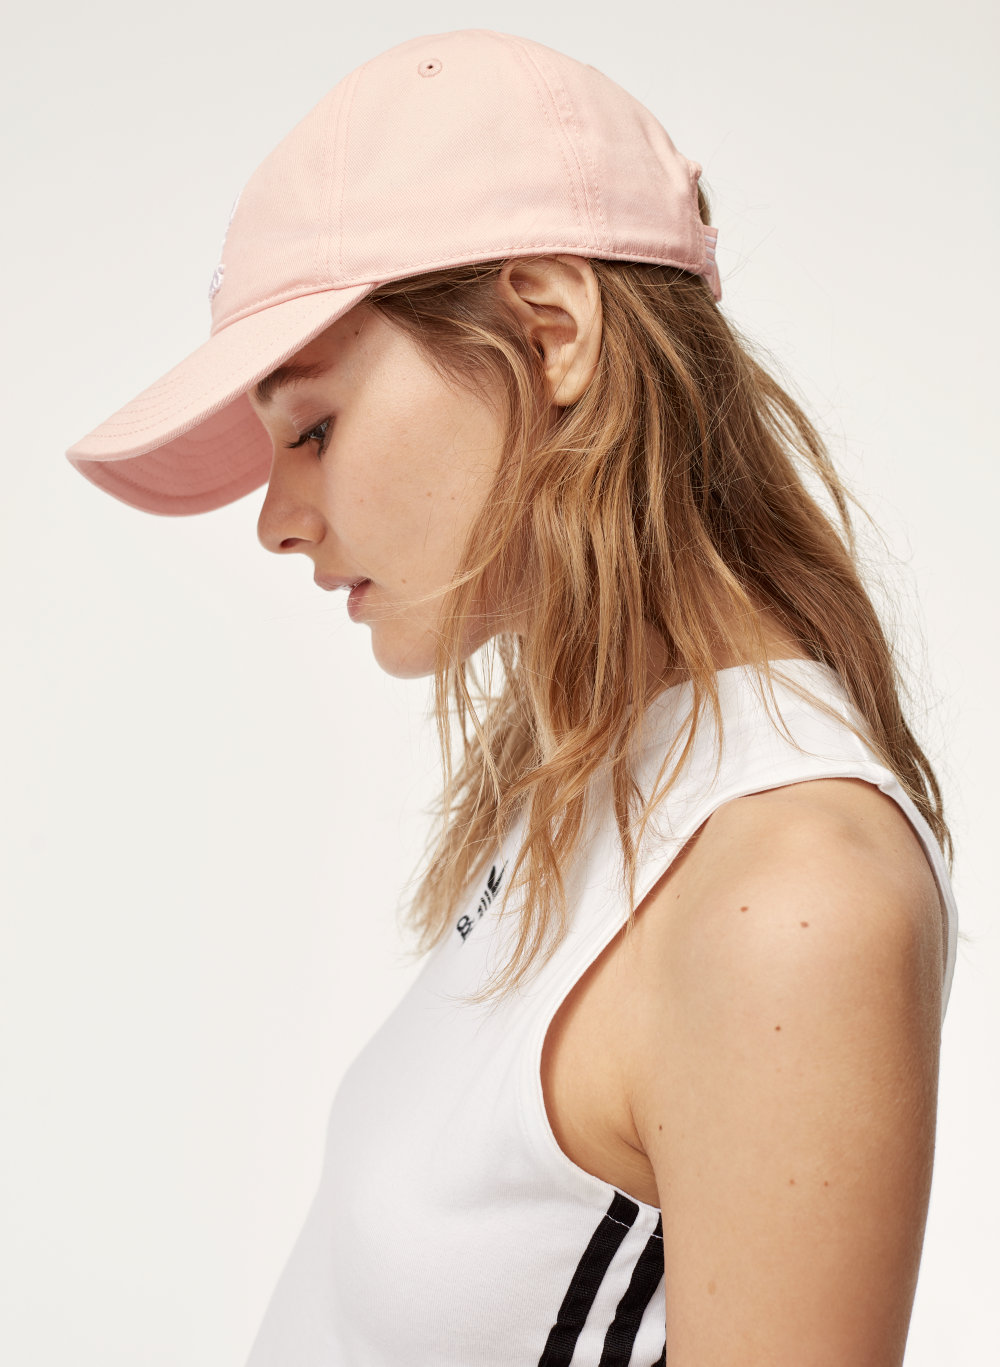 pink adidas baseball cap